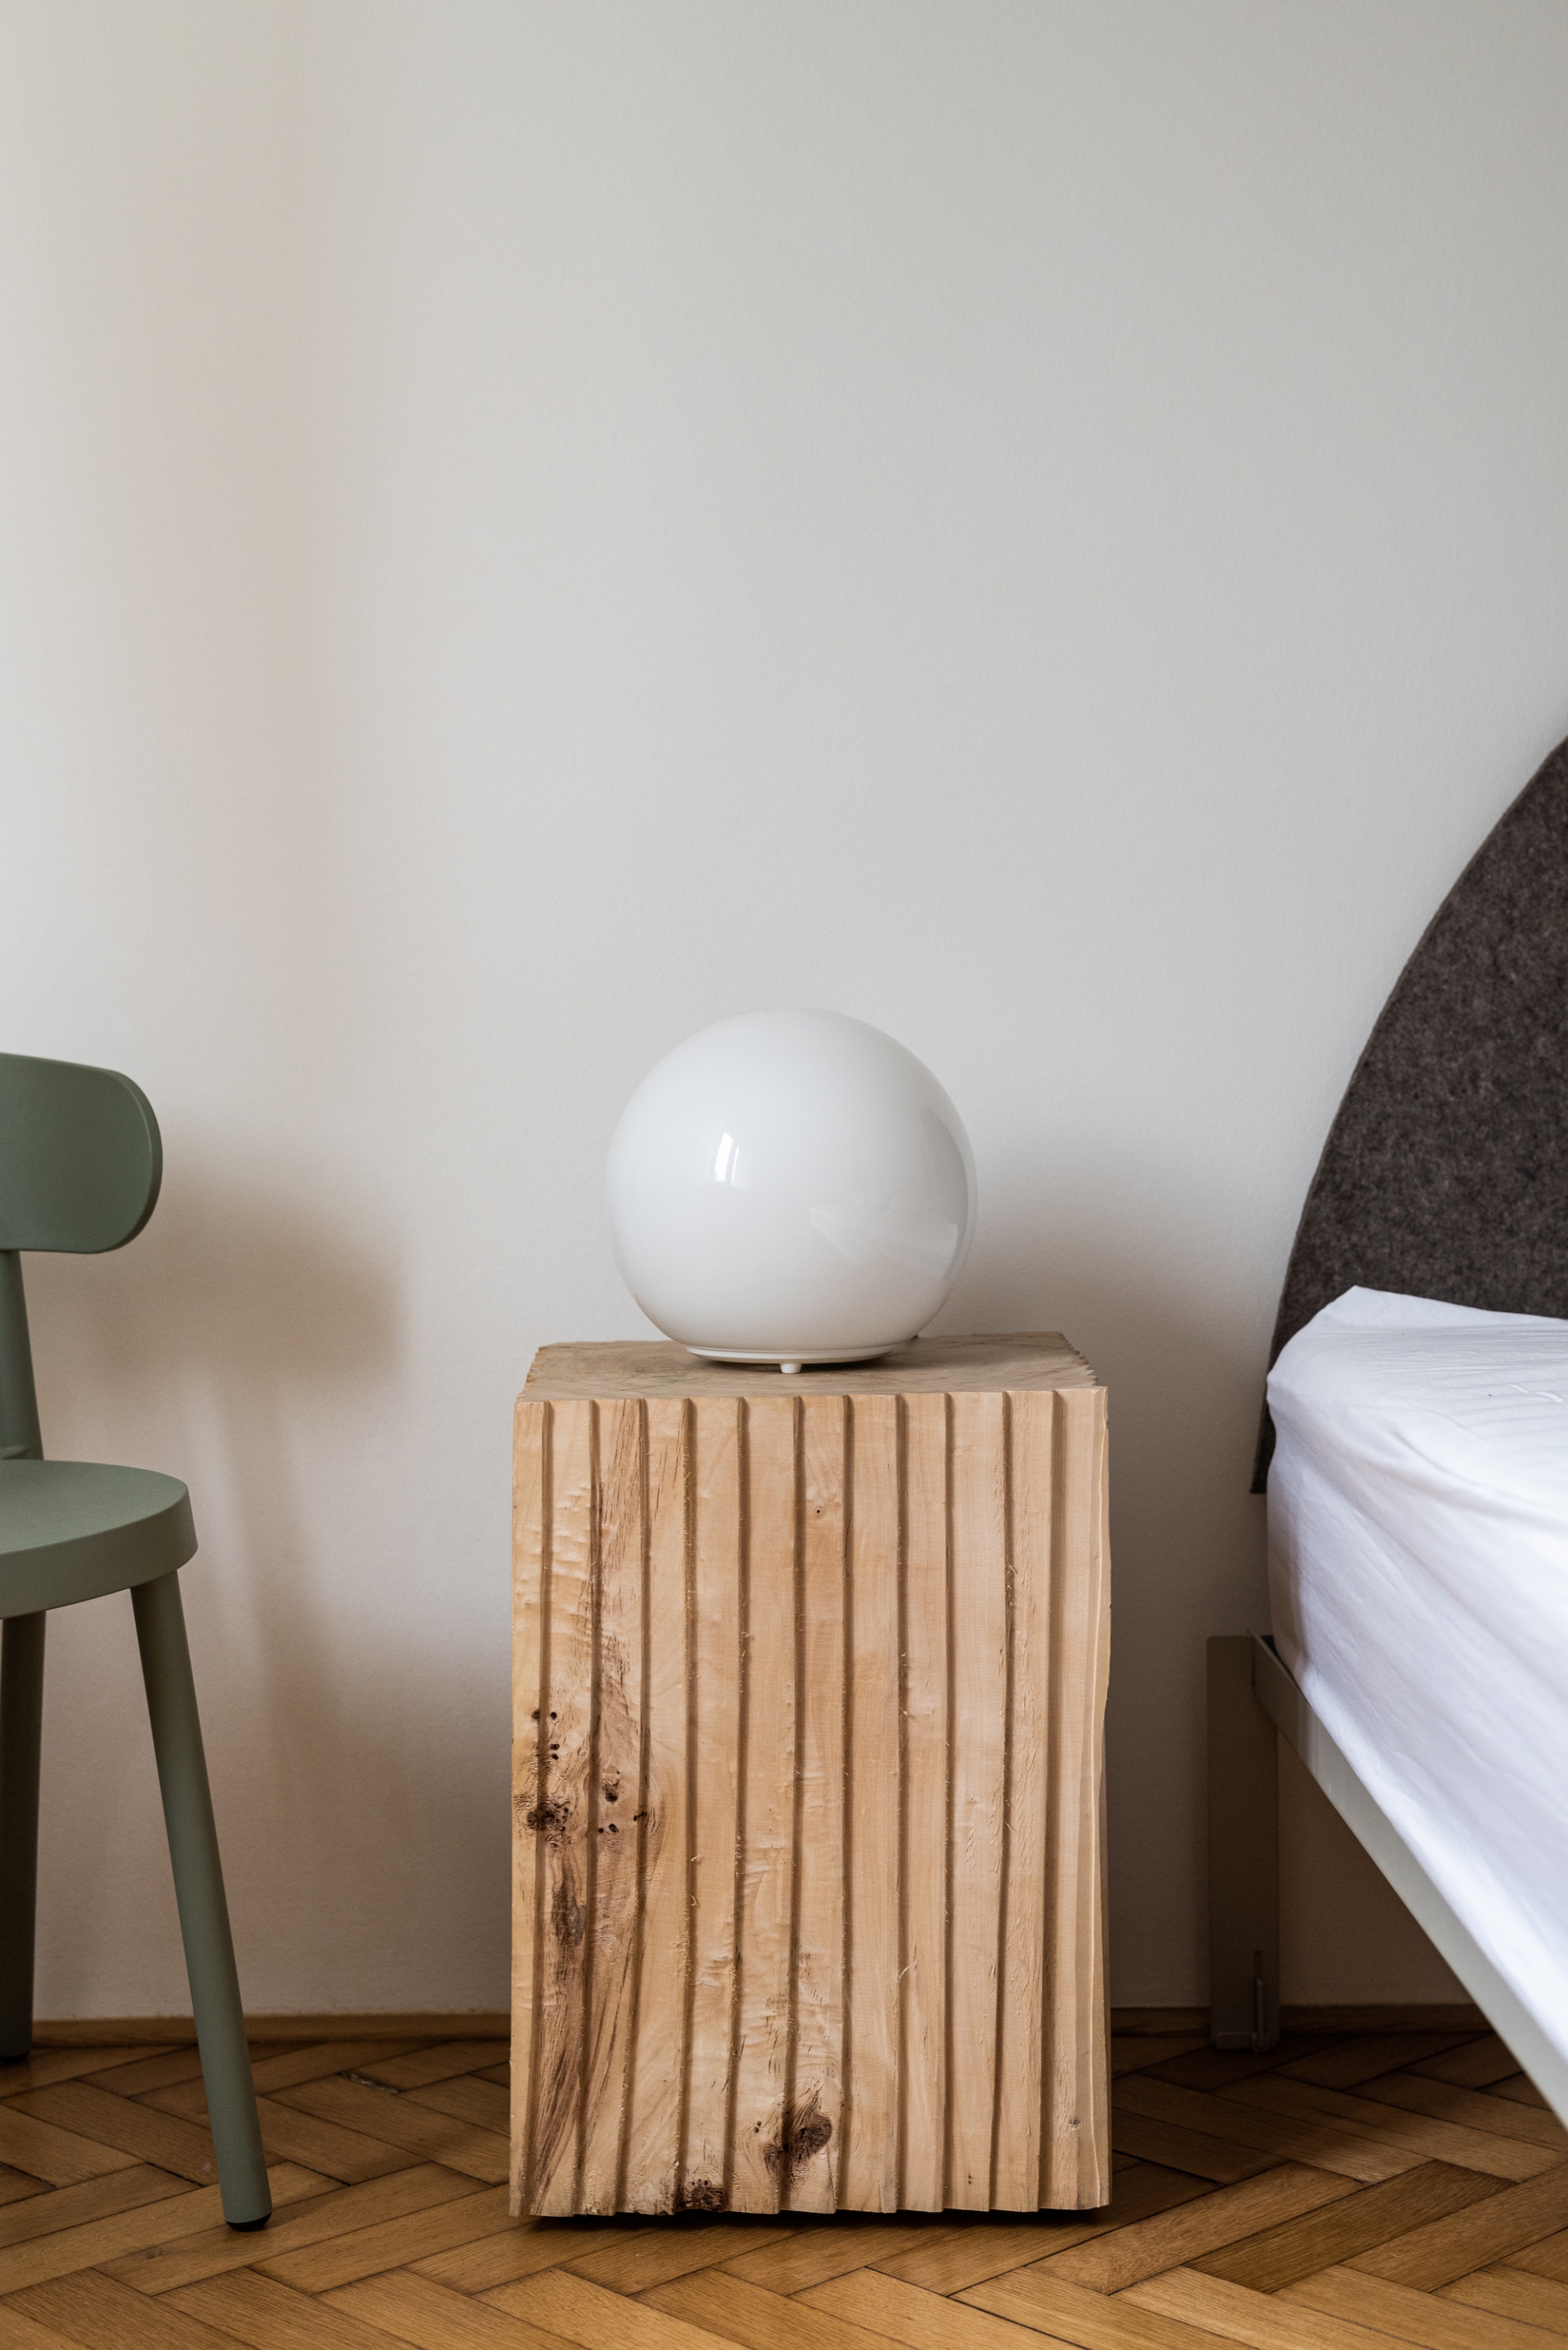 Hai khối gỗ tự nhiên đặt đối xứng nhau thay cho chiếc táp đầu giường quen thuộc. Bên cạnh là chiếc ghế màu xanh làm điểm nhấn cho căn phòng ngập tràn sắc trắng.